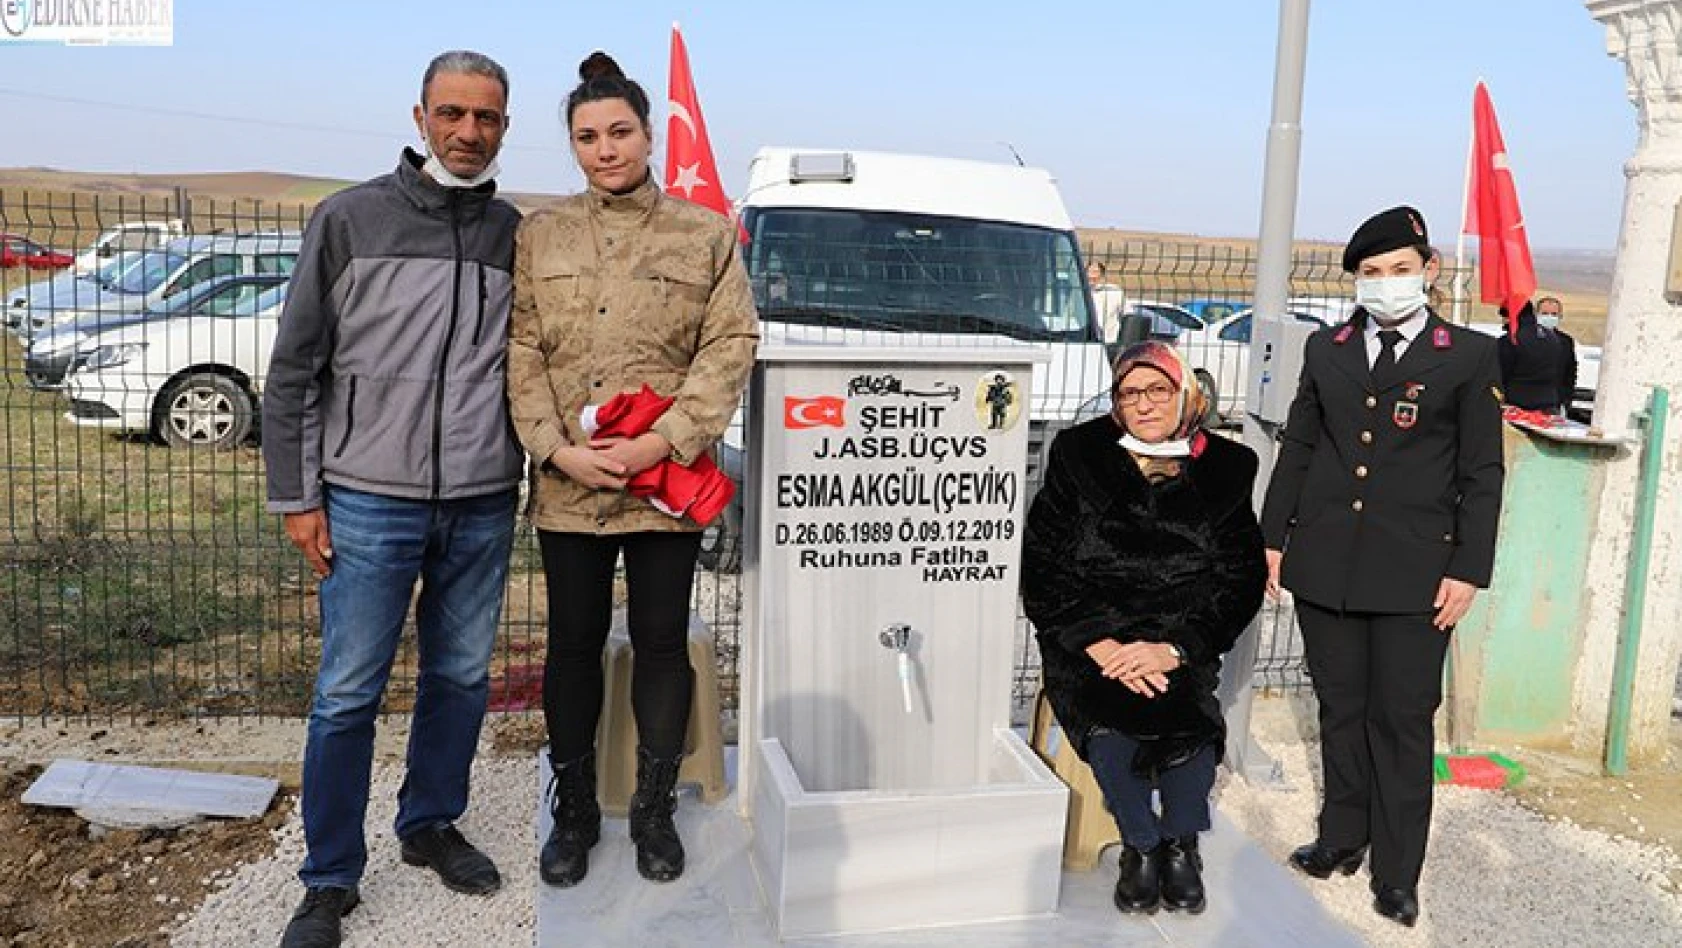 'Şehit Esma Akgül Çevik Çeşmesi' törenle açıldı